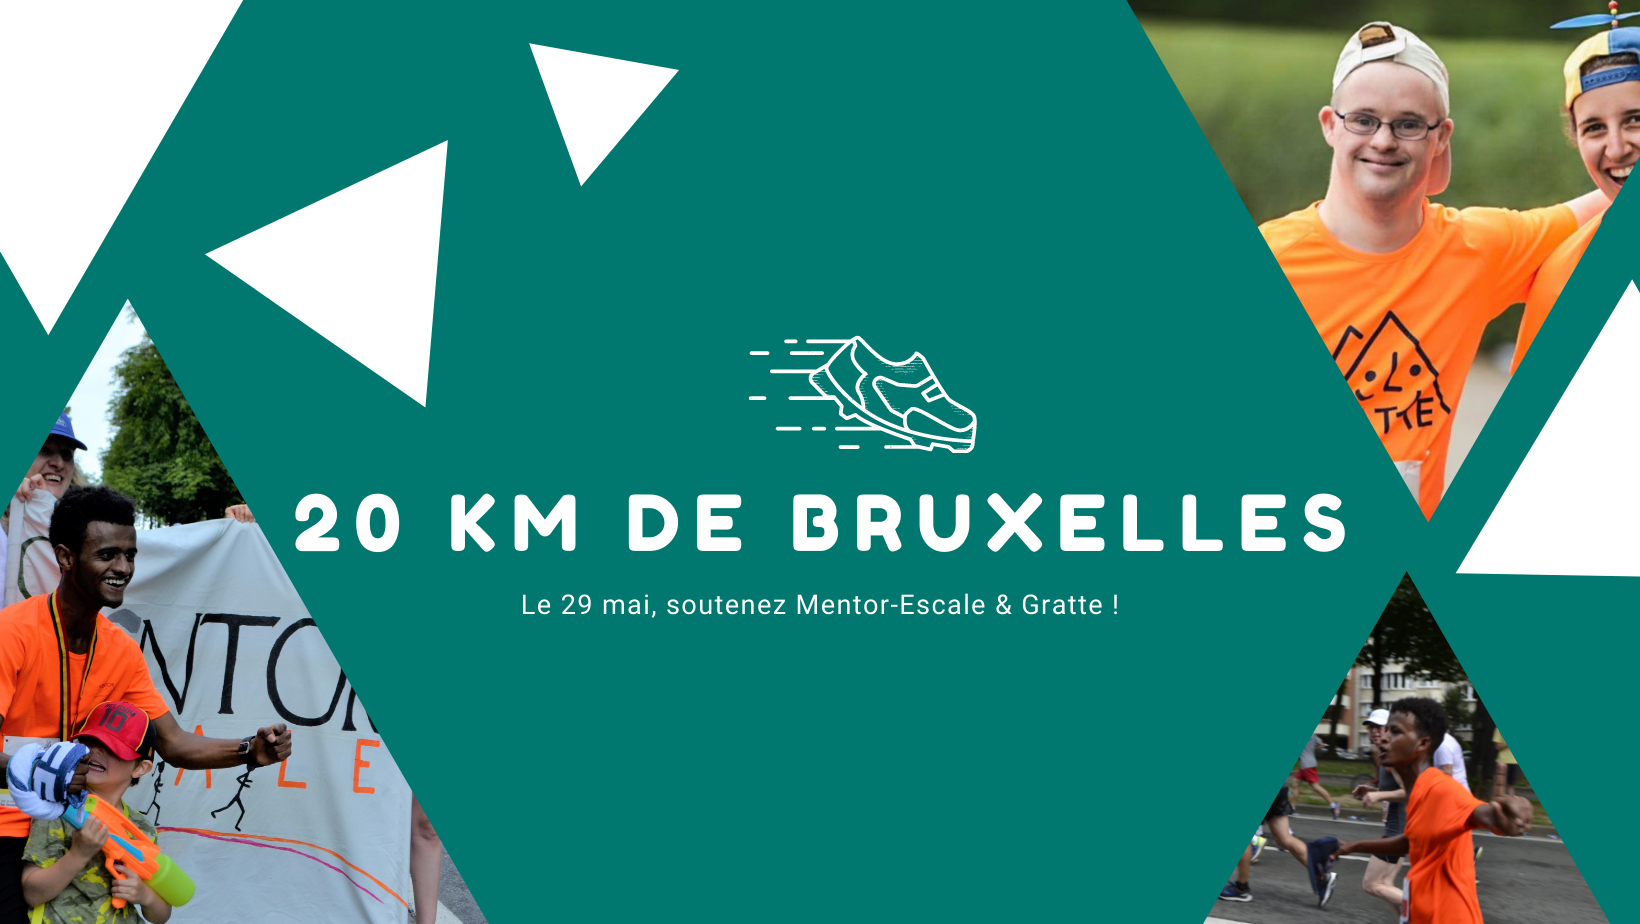 Je bekijkt nu 20km door Brussel met Mentor-Escale en Gratte!